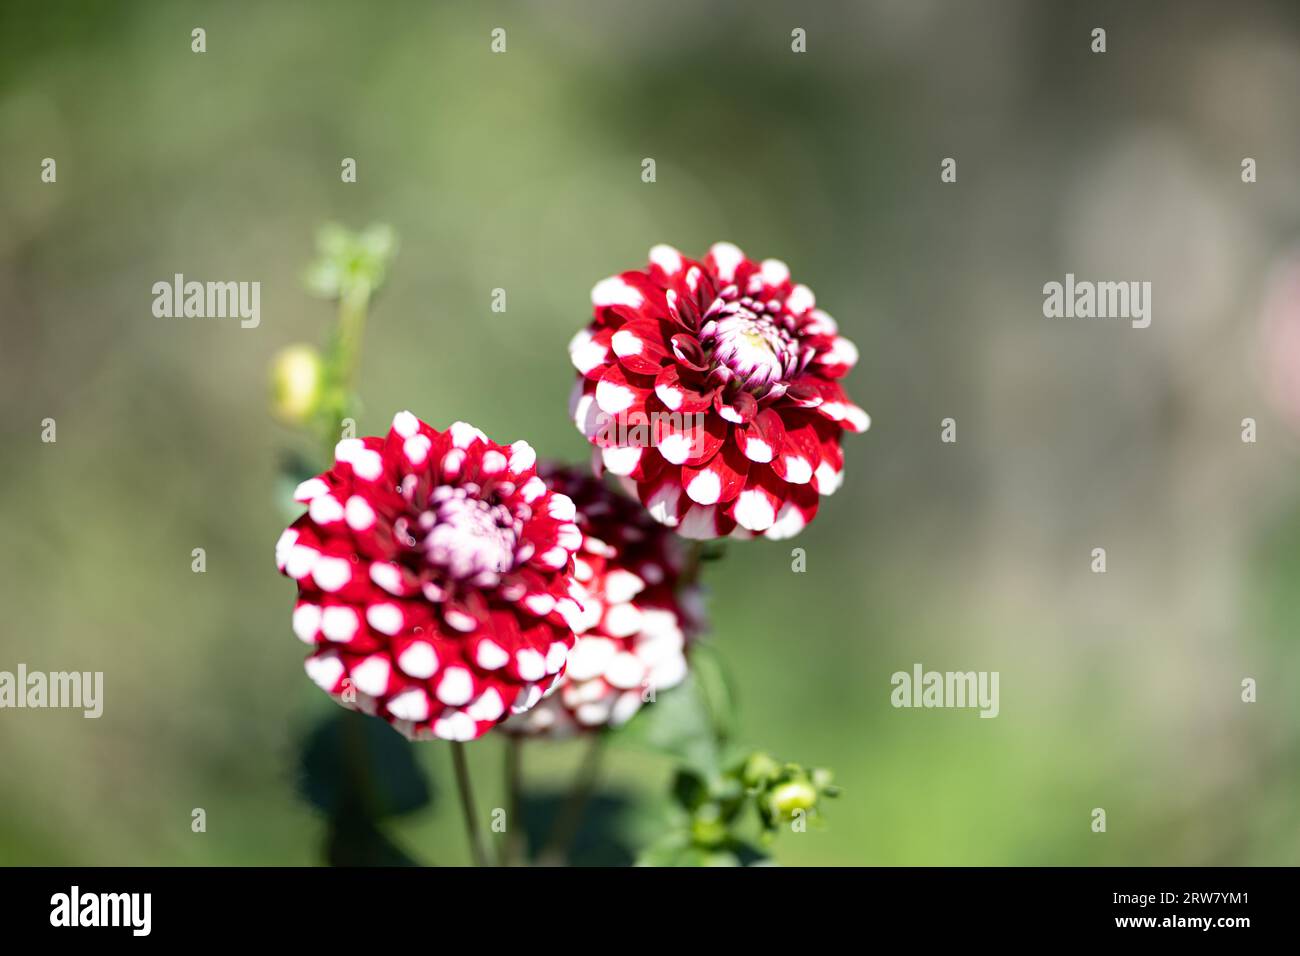 ,Natur, Die großblättrige Dahlie ist eine beliebte Zierpflanze, die für ihre prächtigen, großen Blüten in einer Vielzahl von Farben bekannt ist. SIE b Banque D'Images